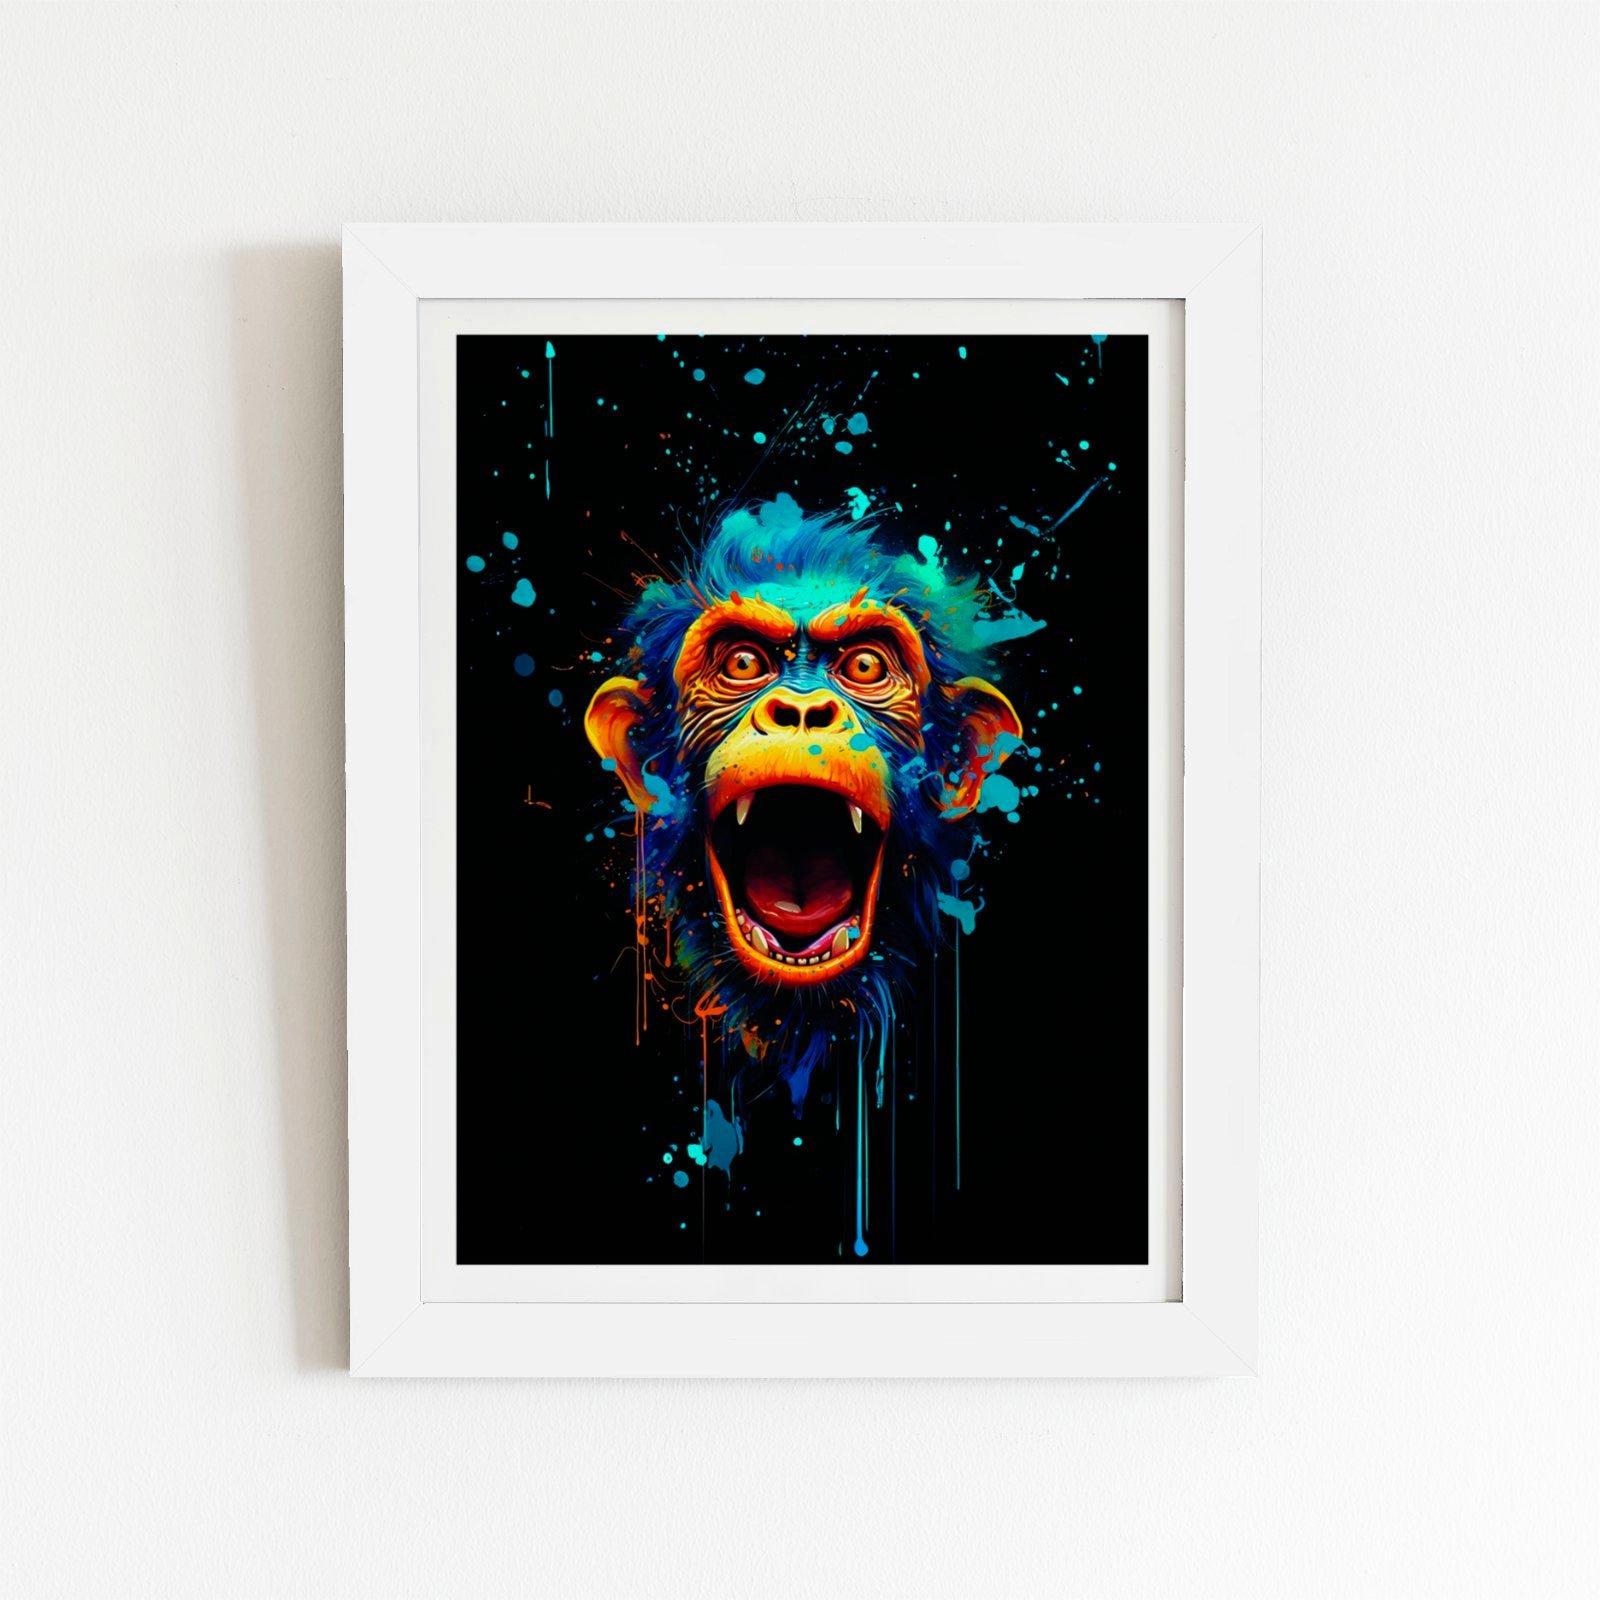 Crazy Monkey face Splashart Framed Art Print